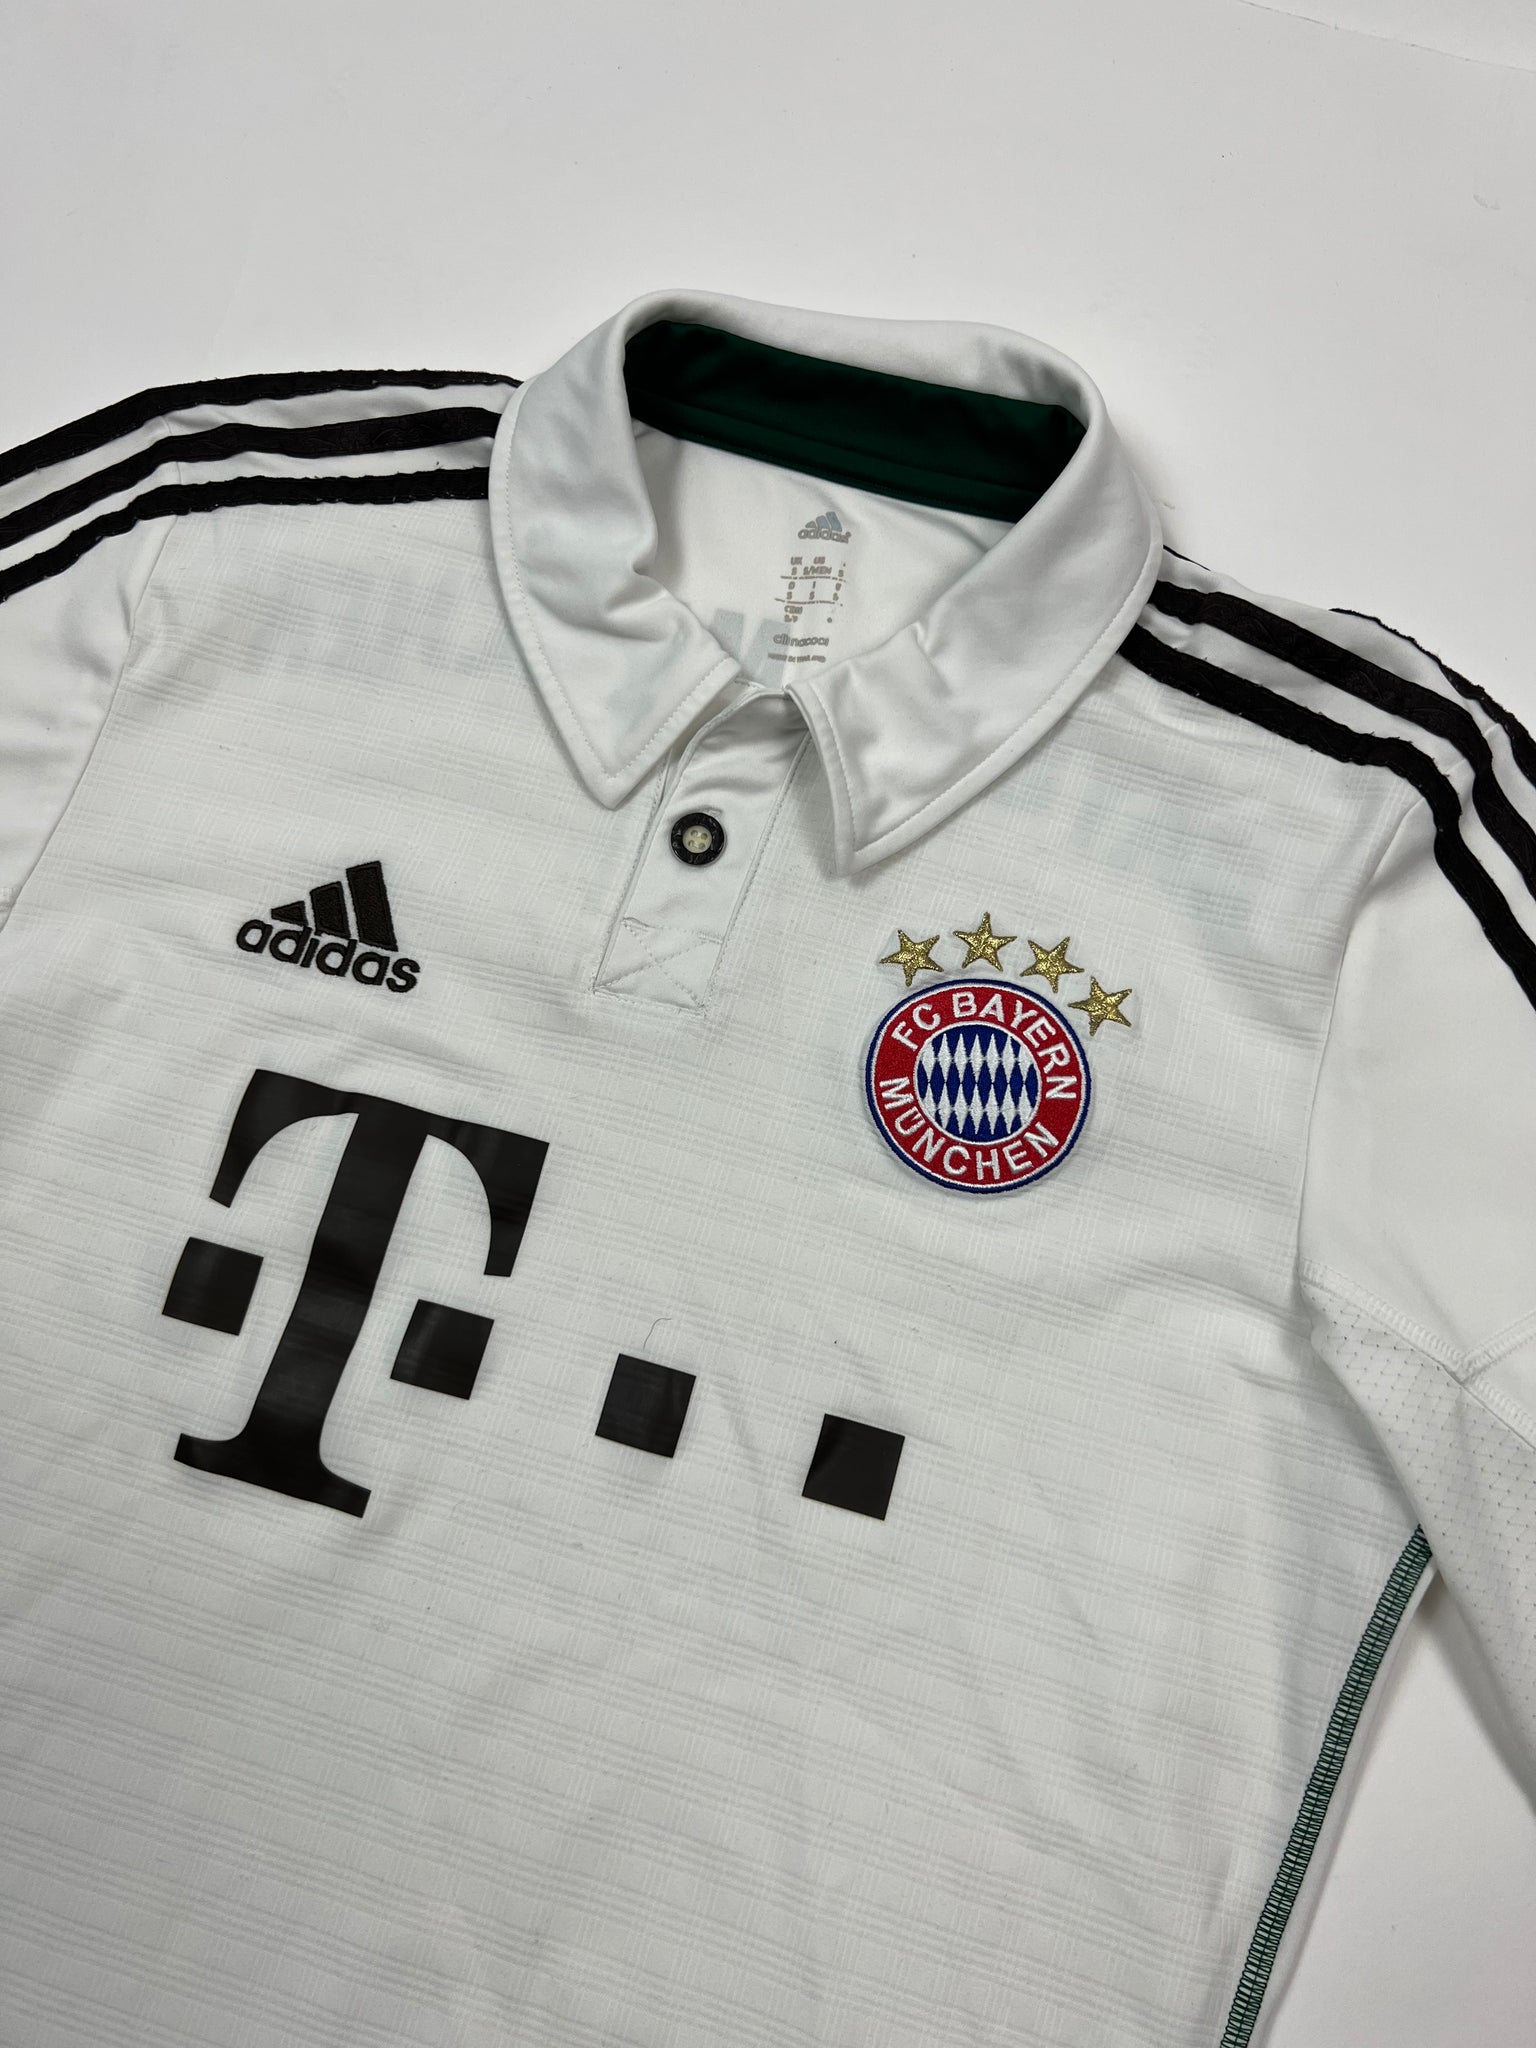 Adidas Bayern Munich Jersey (S)